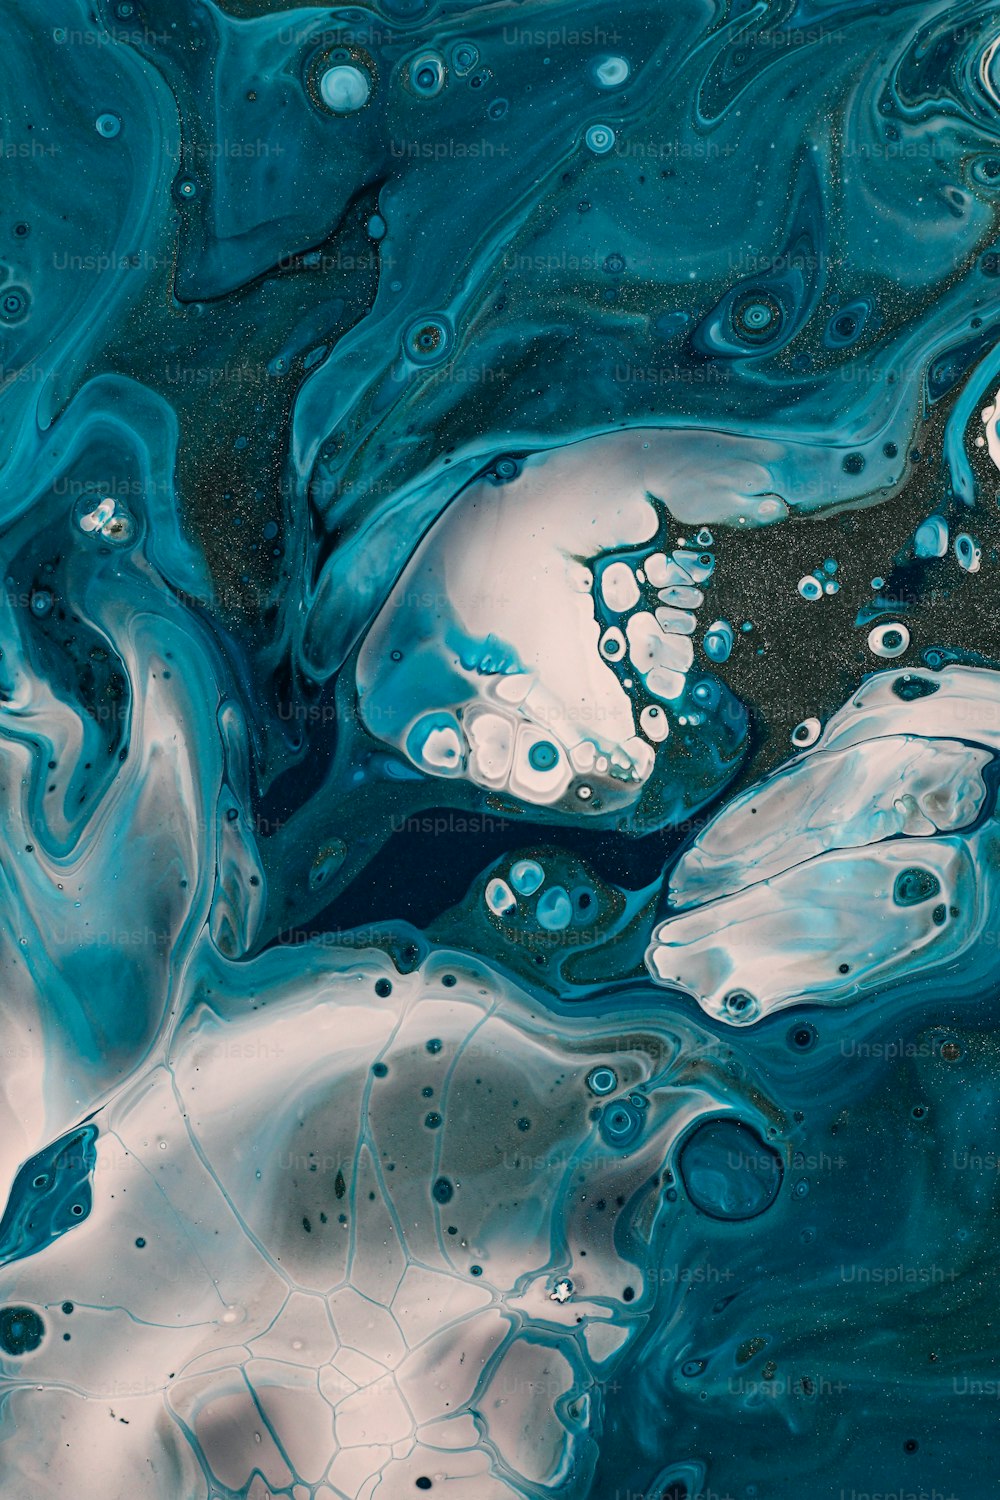 um close up de um líquido azul e branco